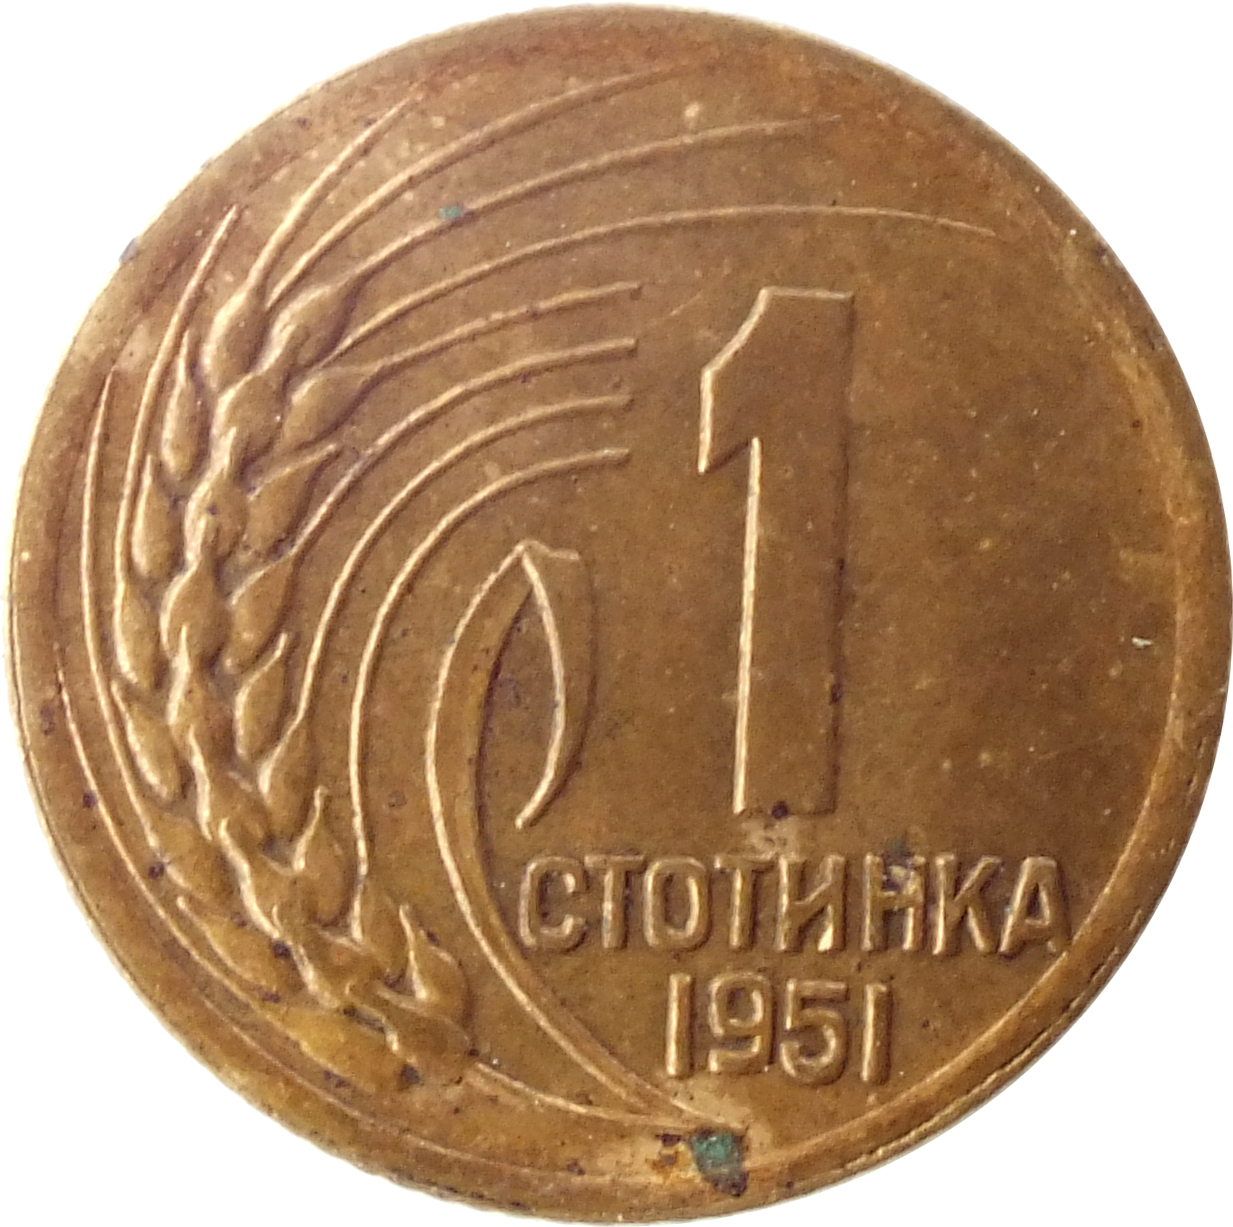 Монеты 1951. 3 Стотинки 1951 Болгария монета. 50 Болгарских стотинок. Монета Болгария 3 стотинки 1951 год. Болгарские монеты стотинки.